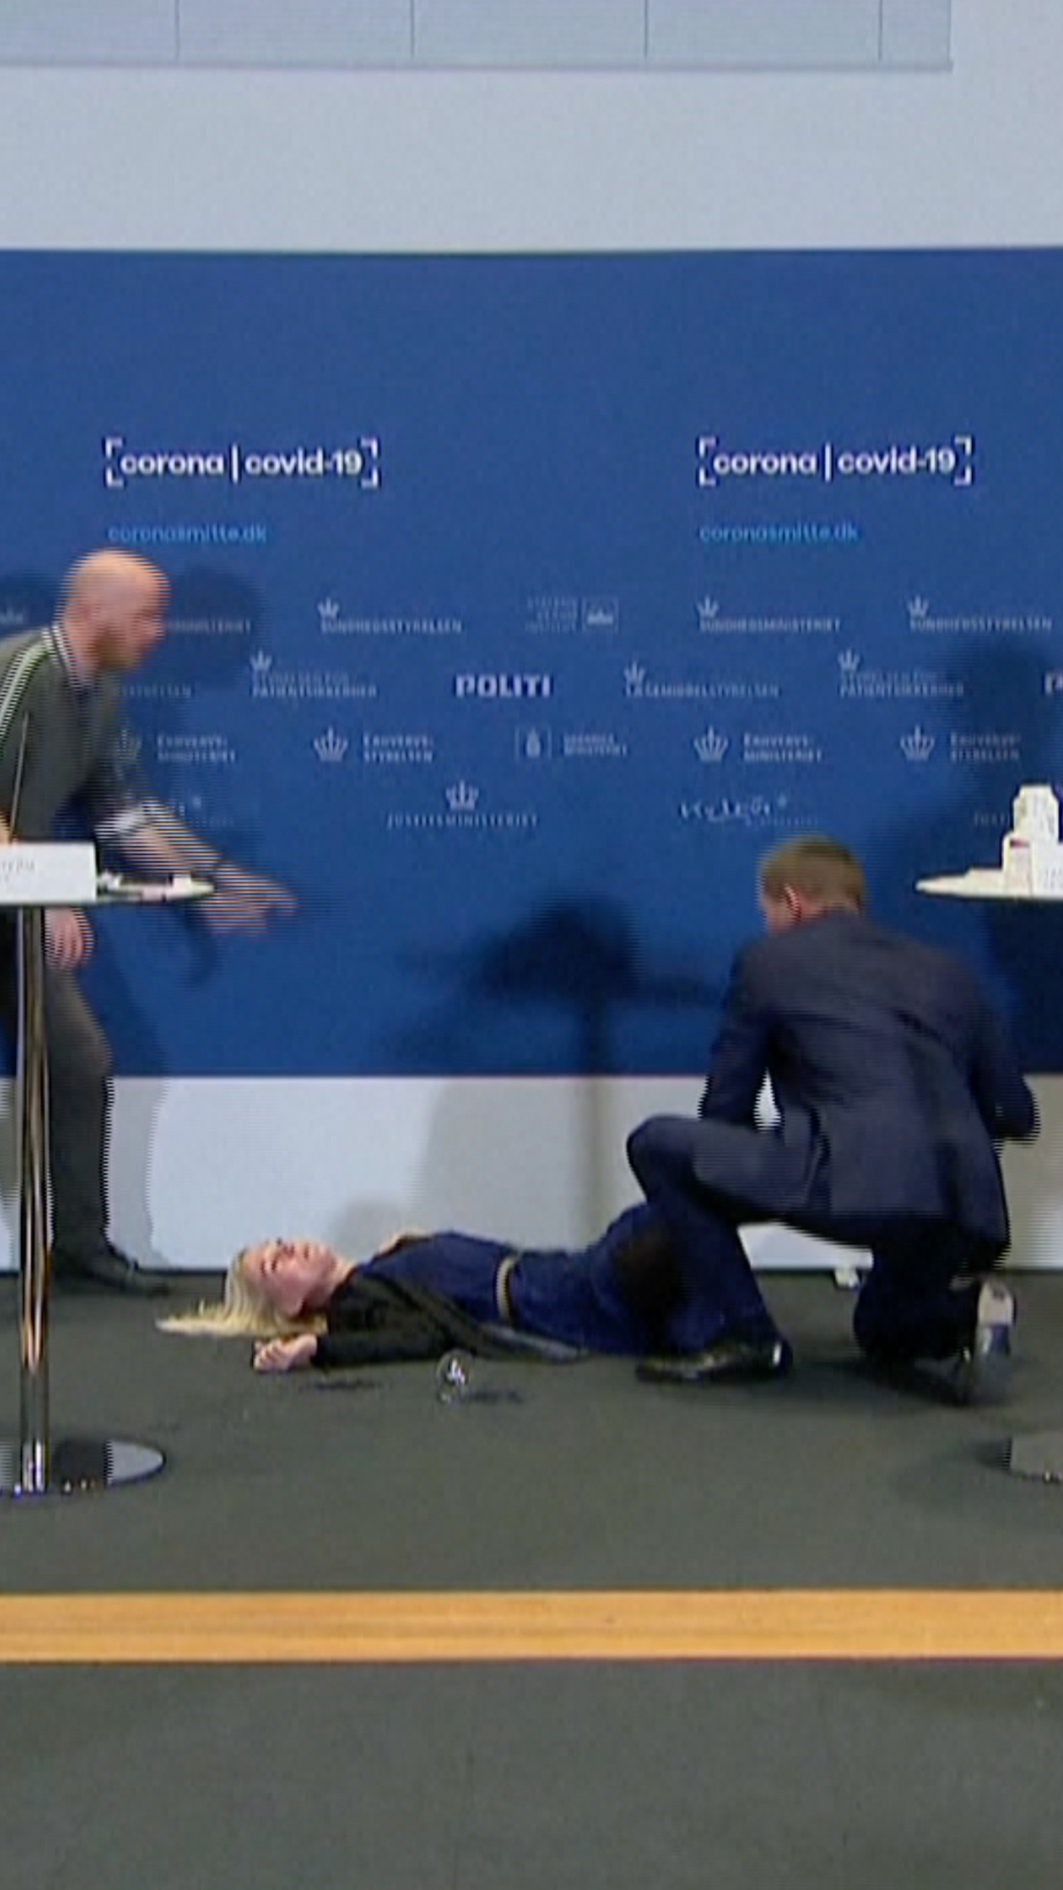 Danish official faints after